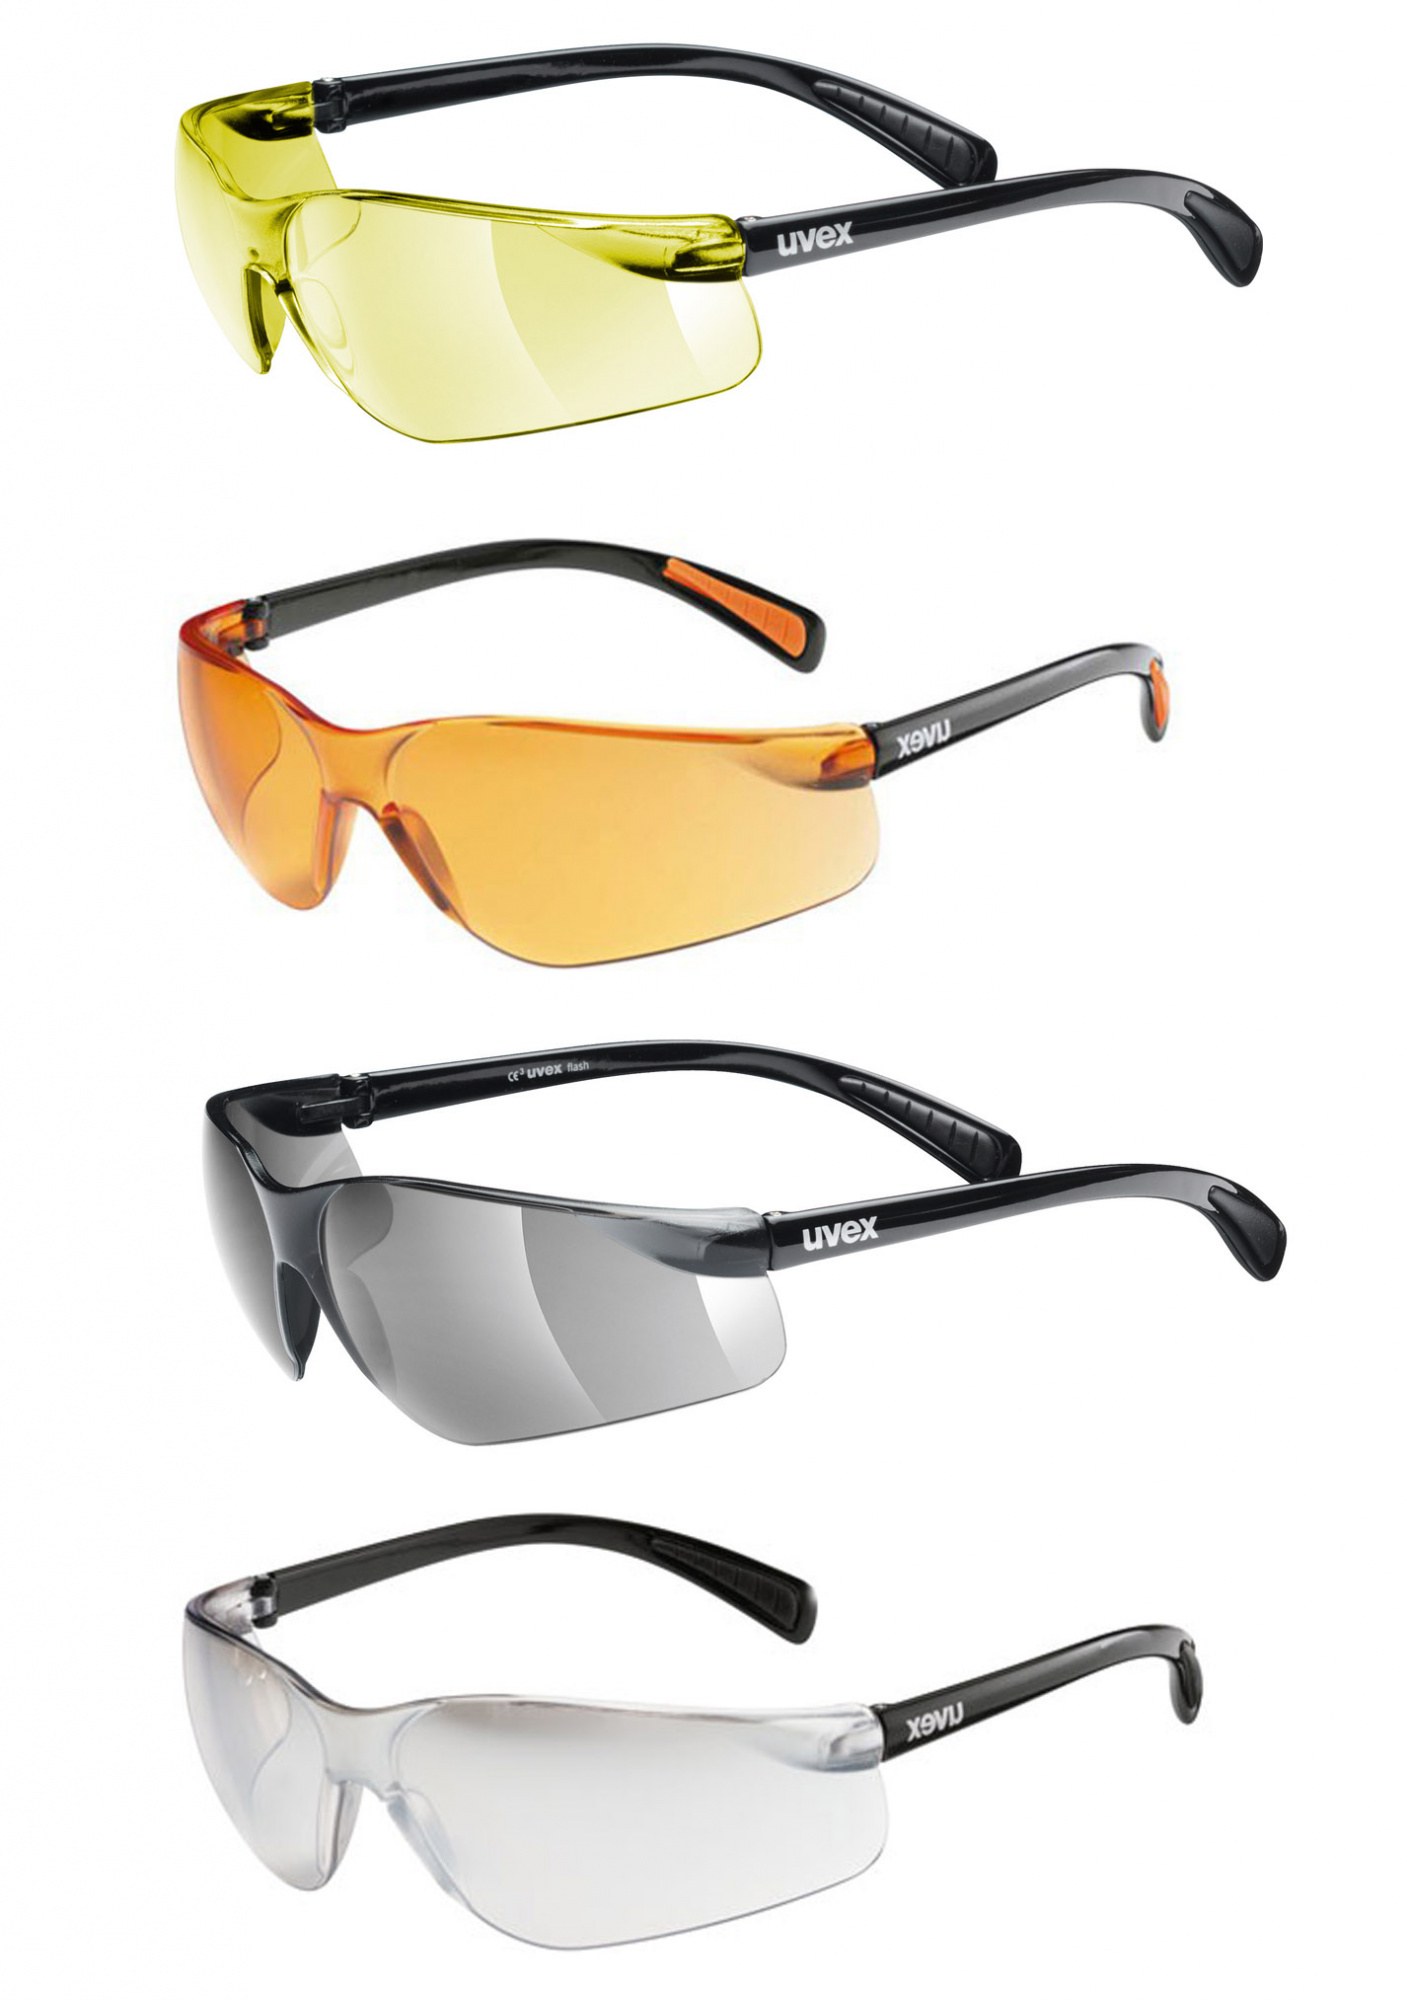 Очки флеша. Велосипедные очки Uvex. Солнцезащитные очки Uvex Flash. Сменные линзы Uvex Pocket. Очки Спортмастер Увекс.